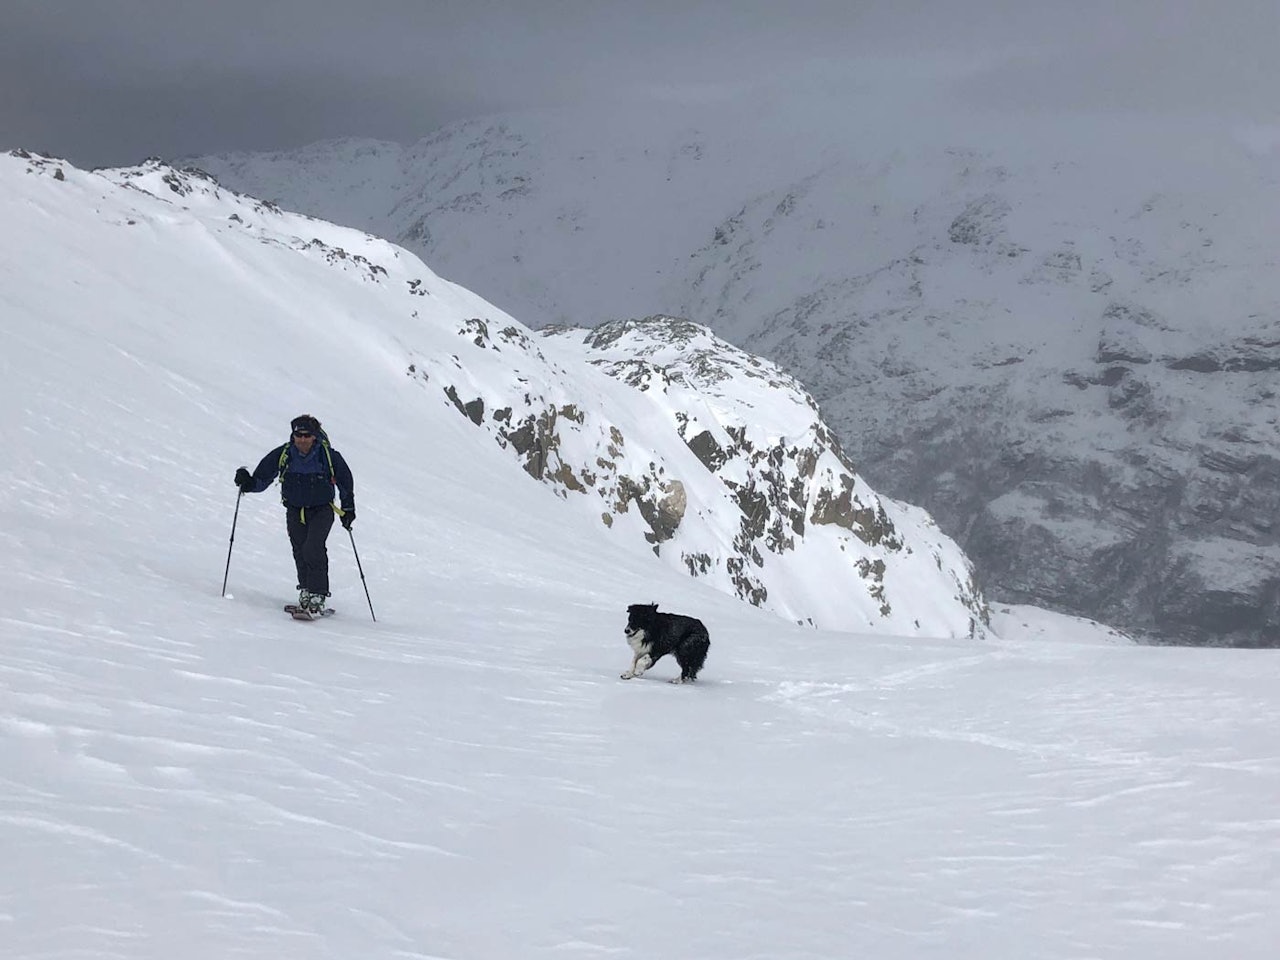 Muligheter. Mange fjellområder har mindre snø enn normalt. Petter Andresen og Wiggo viser at det finnes muligheter. Foto: Audun Holmøy Røhrt